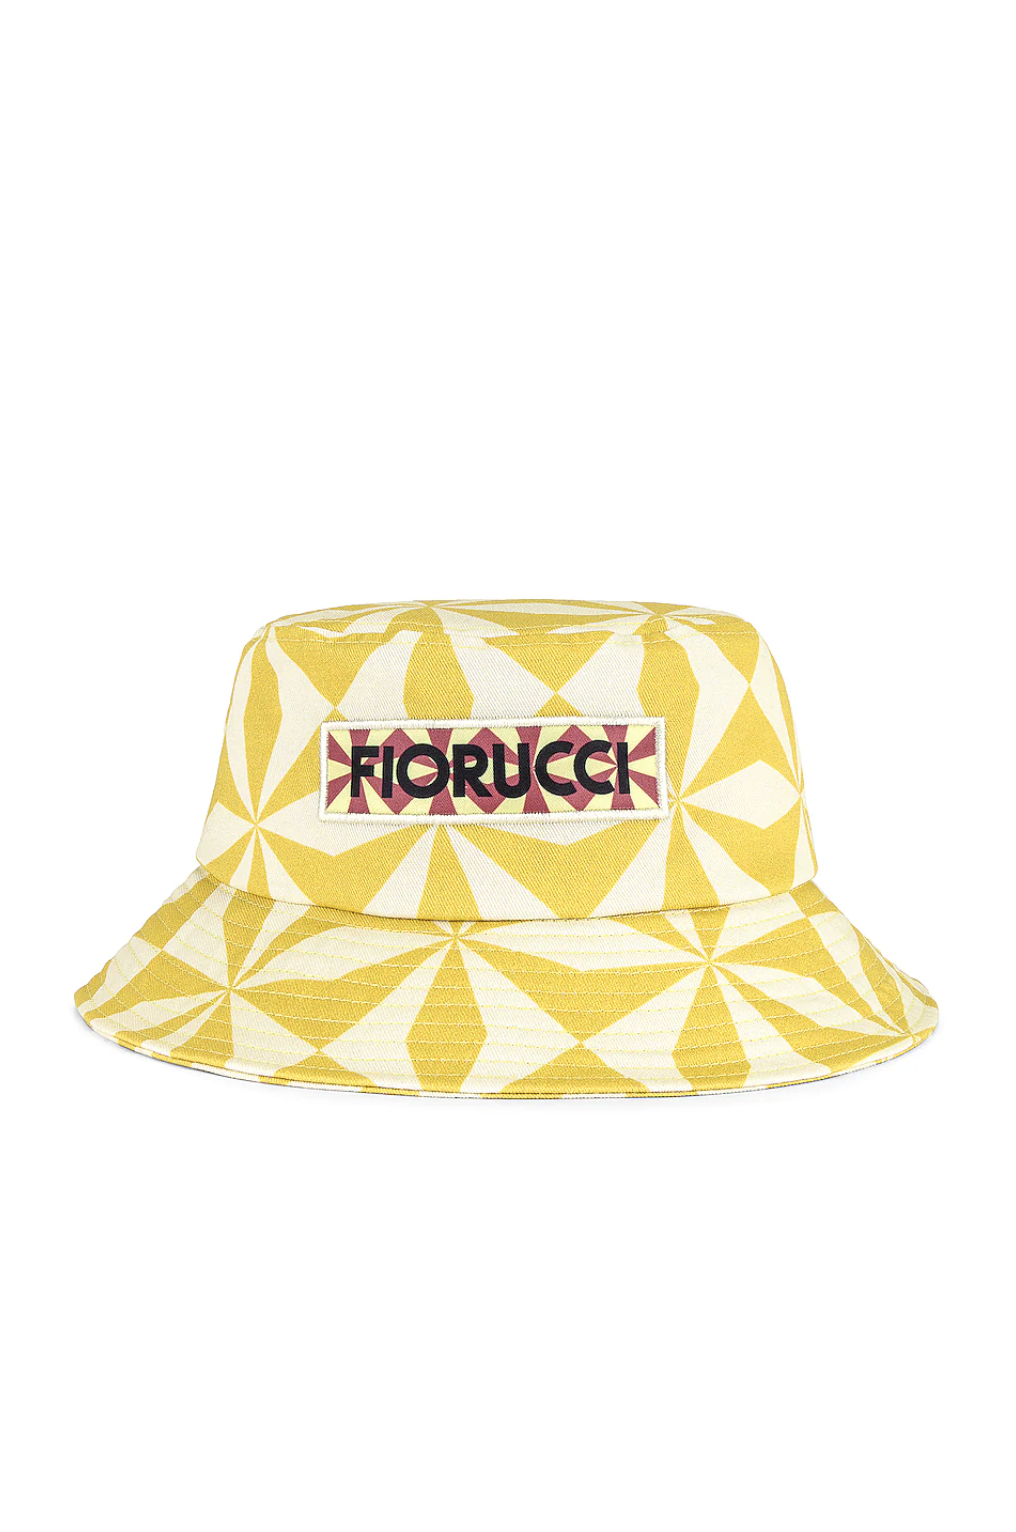 Bucket Hats Letters Print Soft Canvas Unisex Women Men Hats Summer Party Street Plain Sun Hat Hip Hop Caps